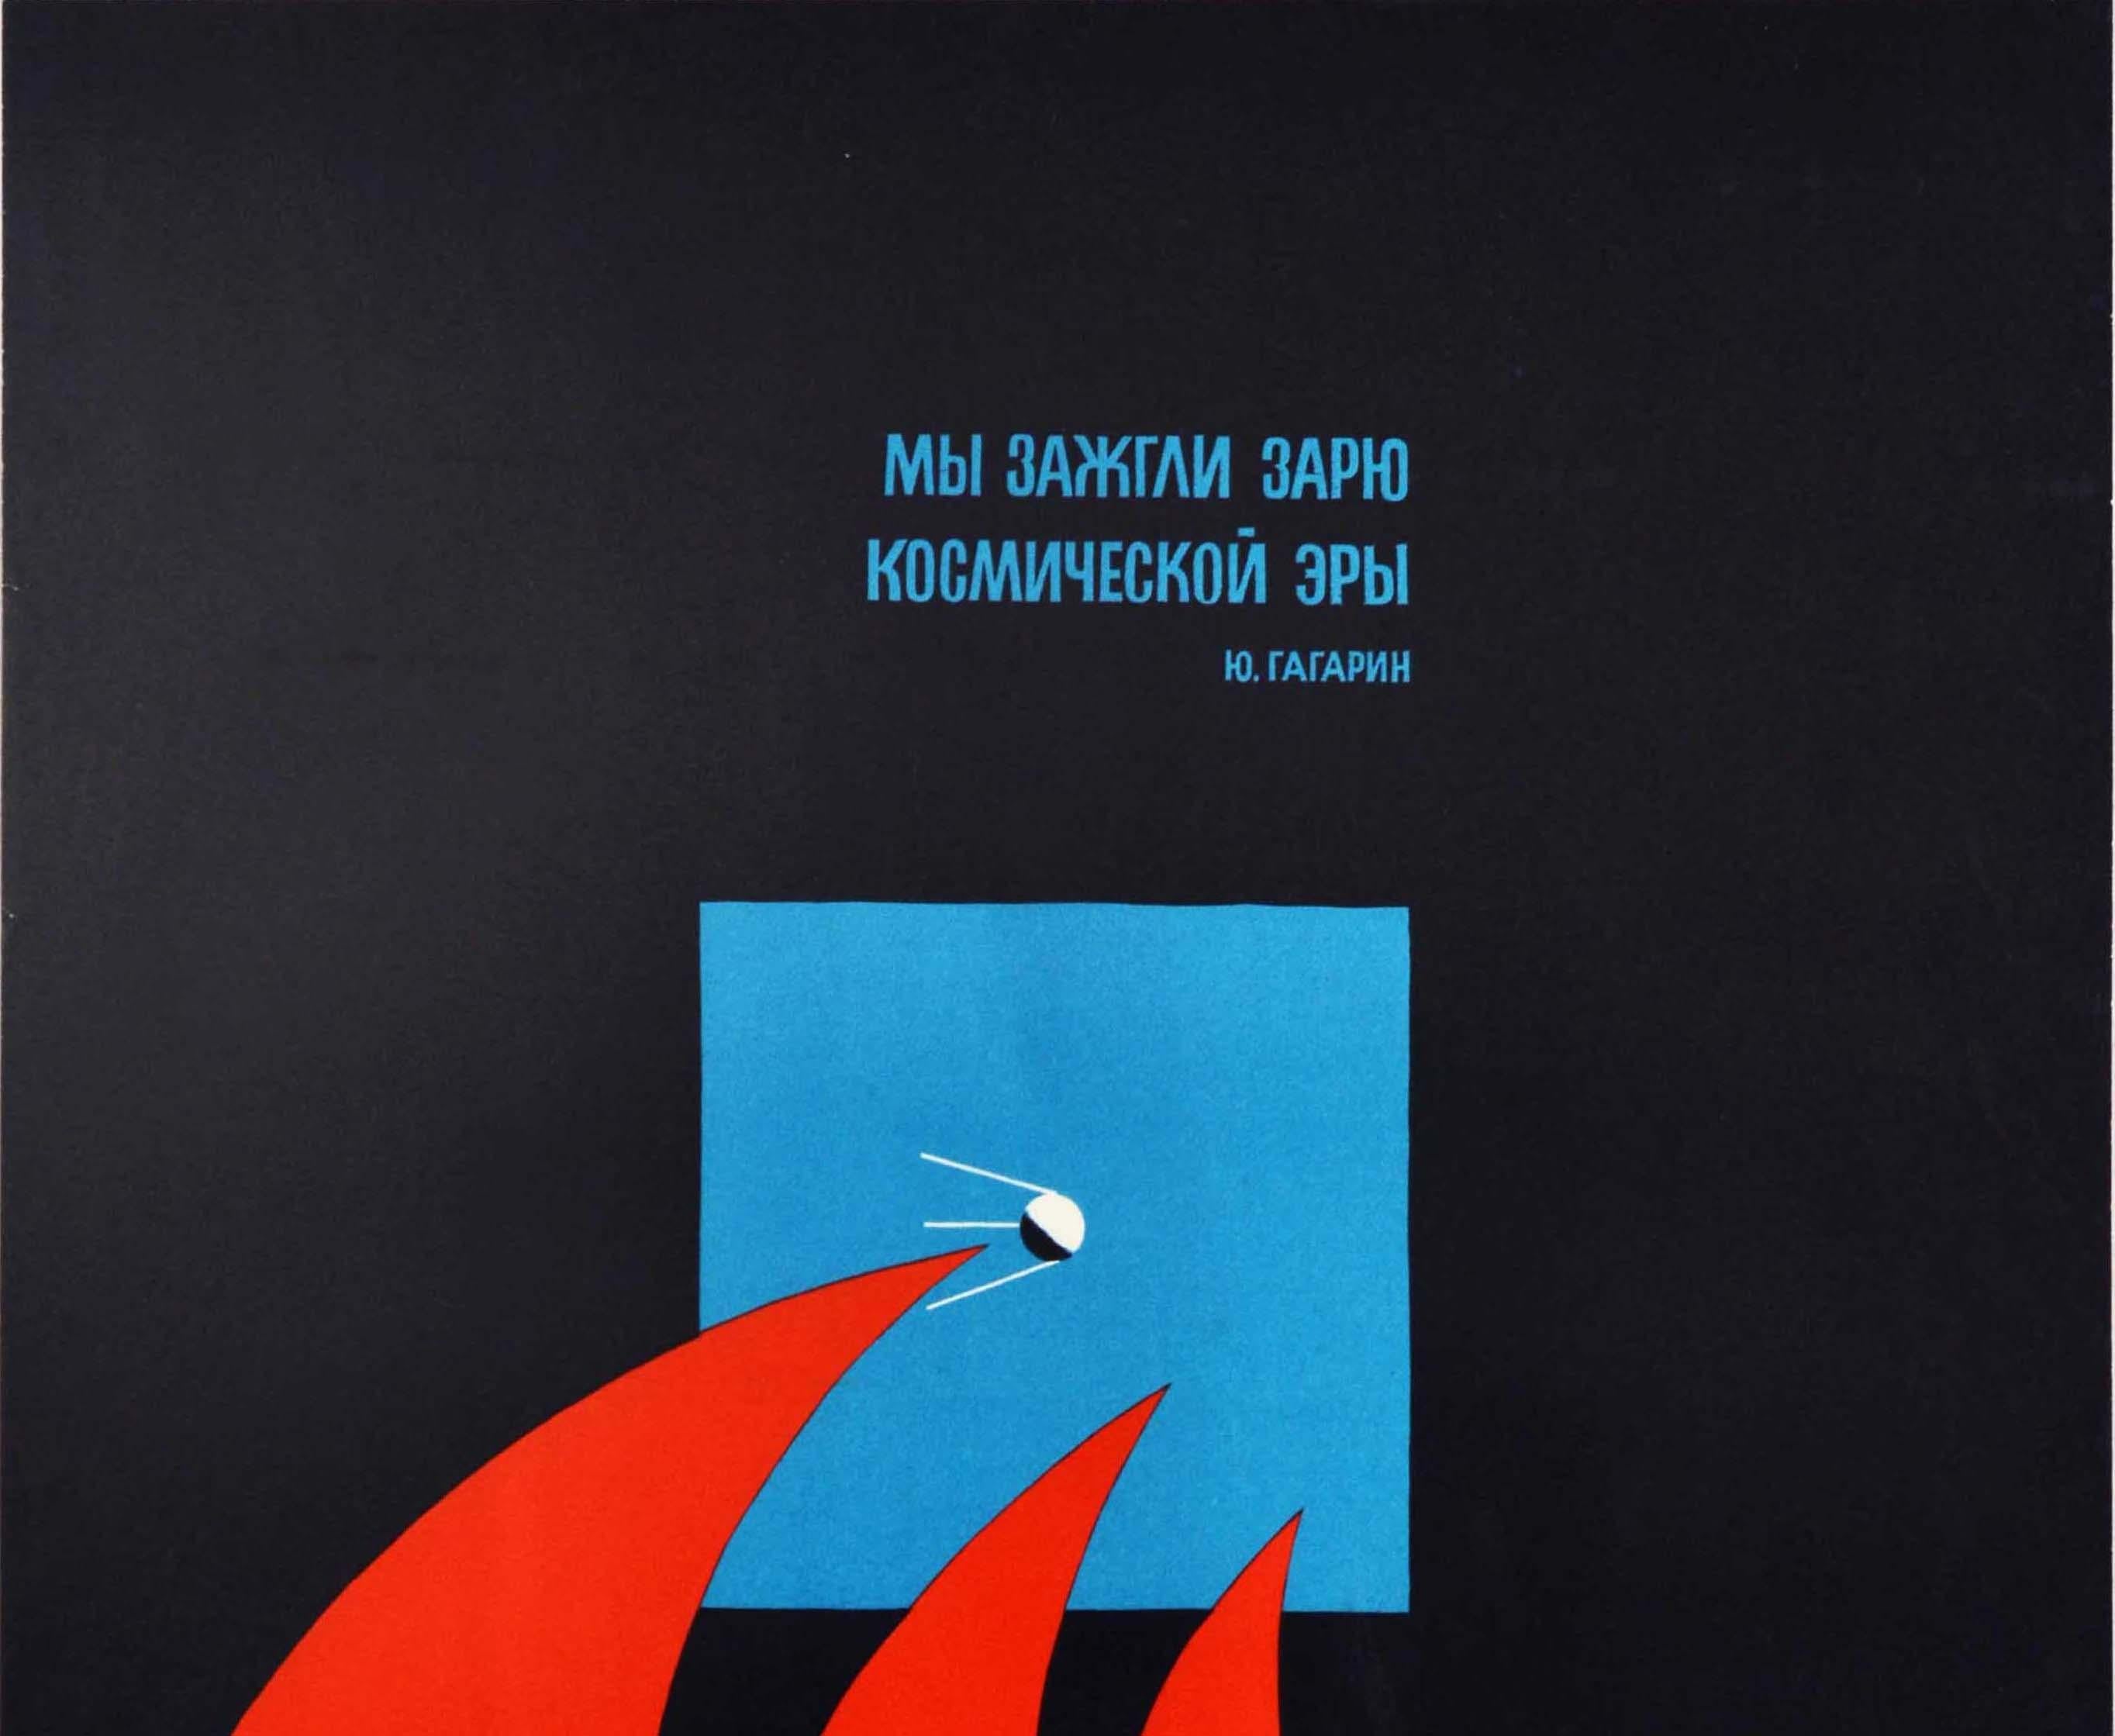 Affiche soviétique originale d'époque reprenant une citation du premier homme dans l'espace Youri Gagarine (Youri AGE ; 1934-1968) - Nous avons illuminé l'aube de l'ère spatiale / ? ? ? ????? ? ??? ? ?????????? ? ?? - au-dessus d'une image graphique